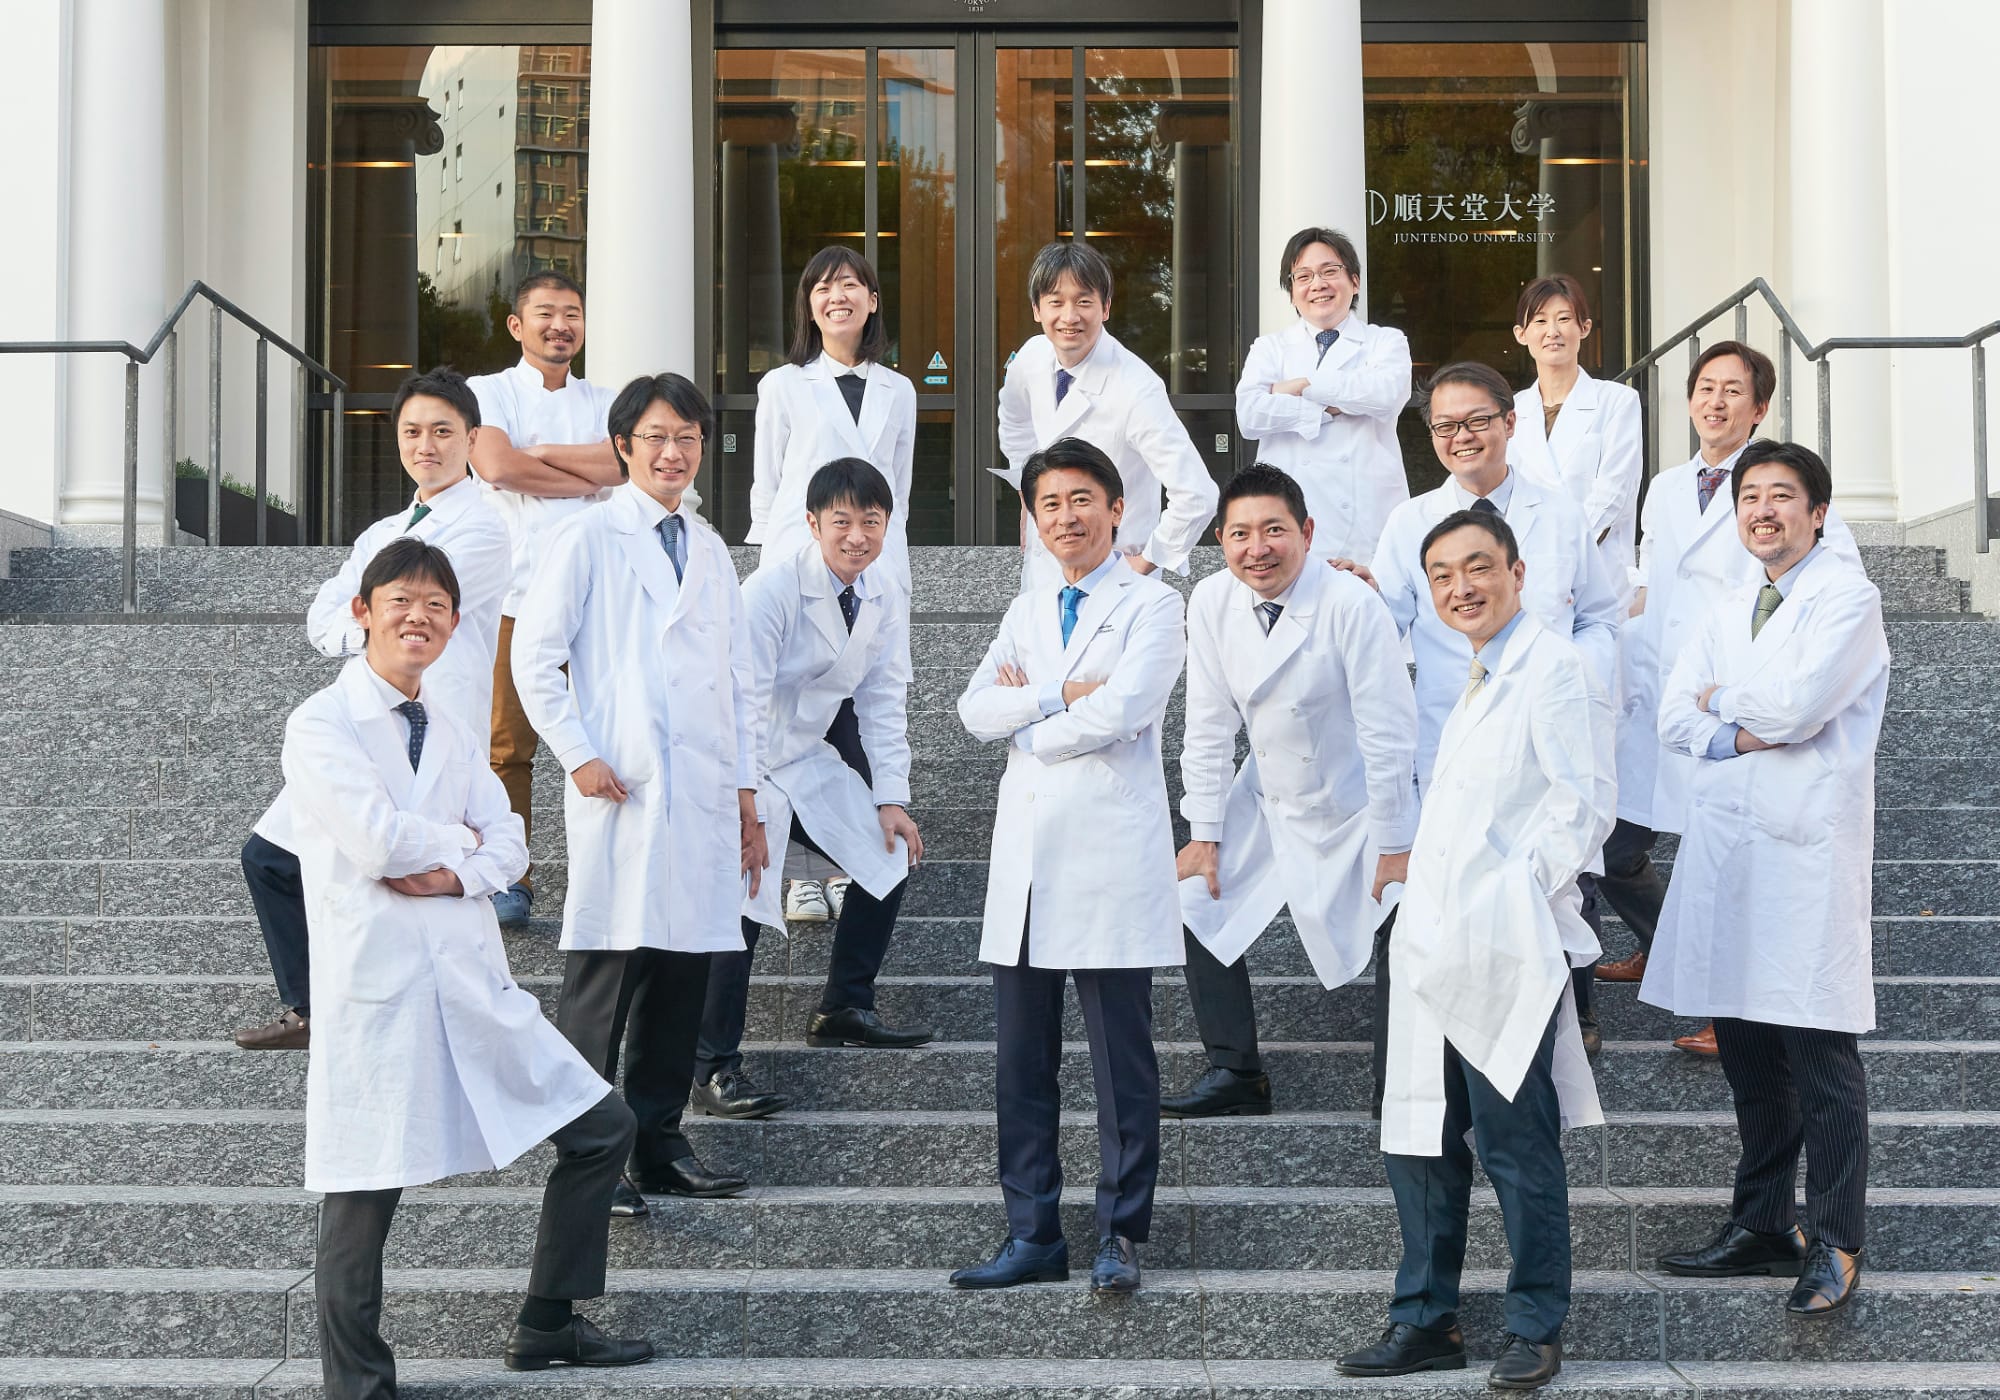 循環器内科の未来を切り開く新たな医学の知見を日本から世界へ